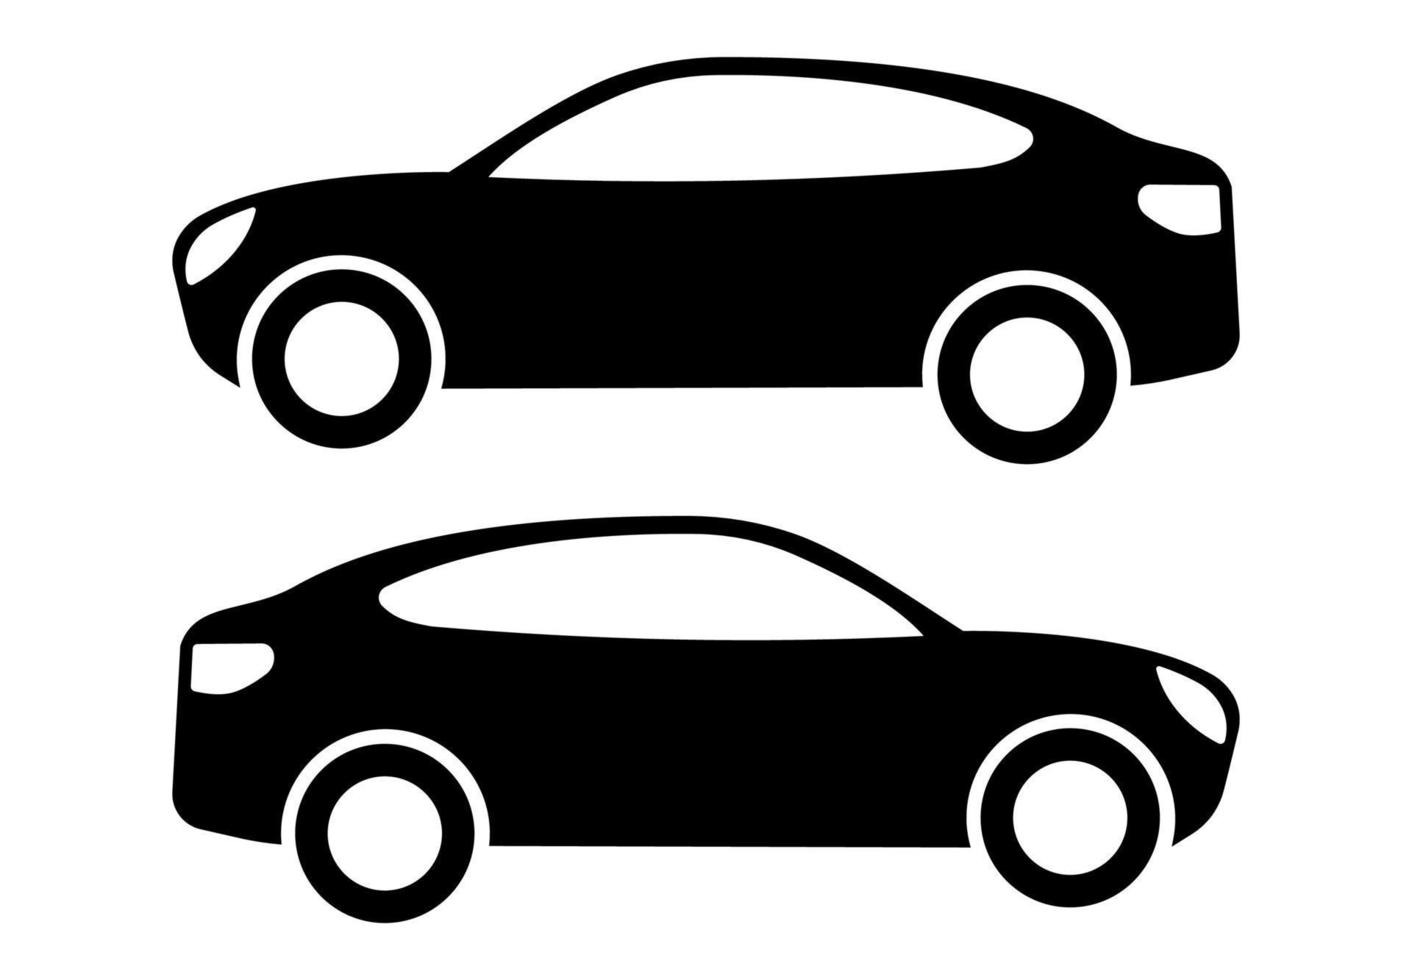 två svart bil silhuetter på en vit bakgrund. vektor illustration.